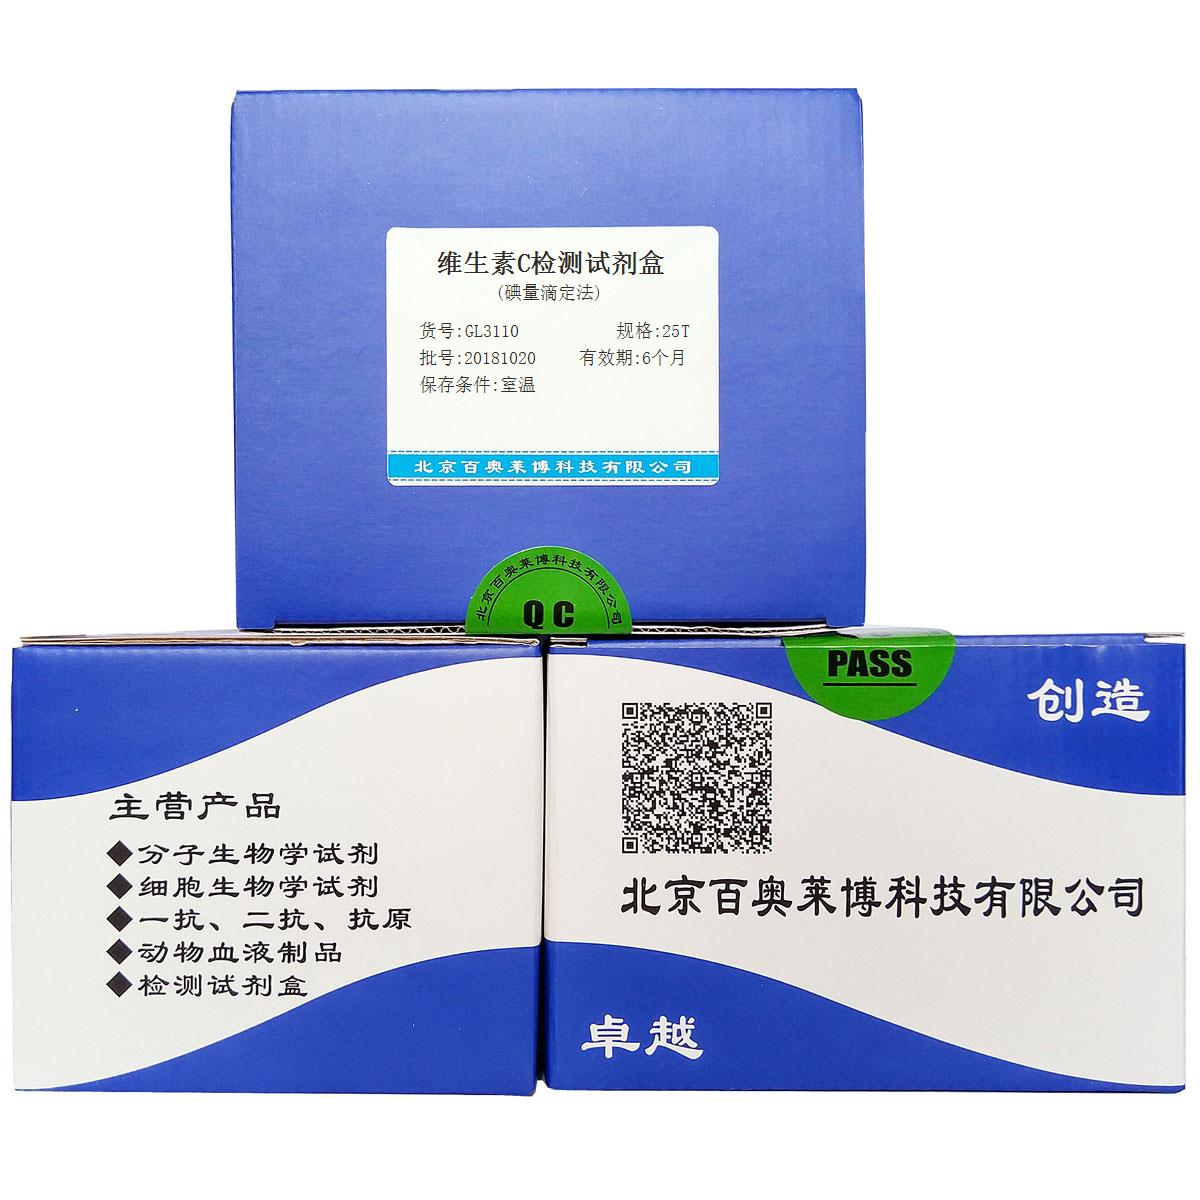 维生素C检测试剂盒(碘量滴定法)